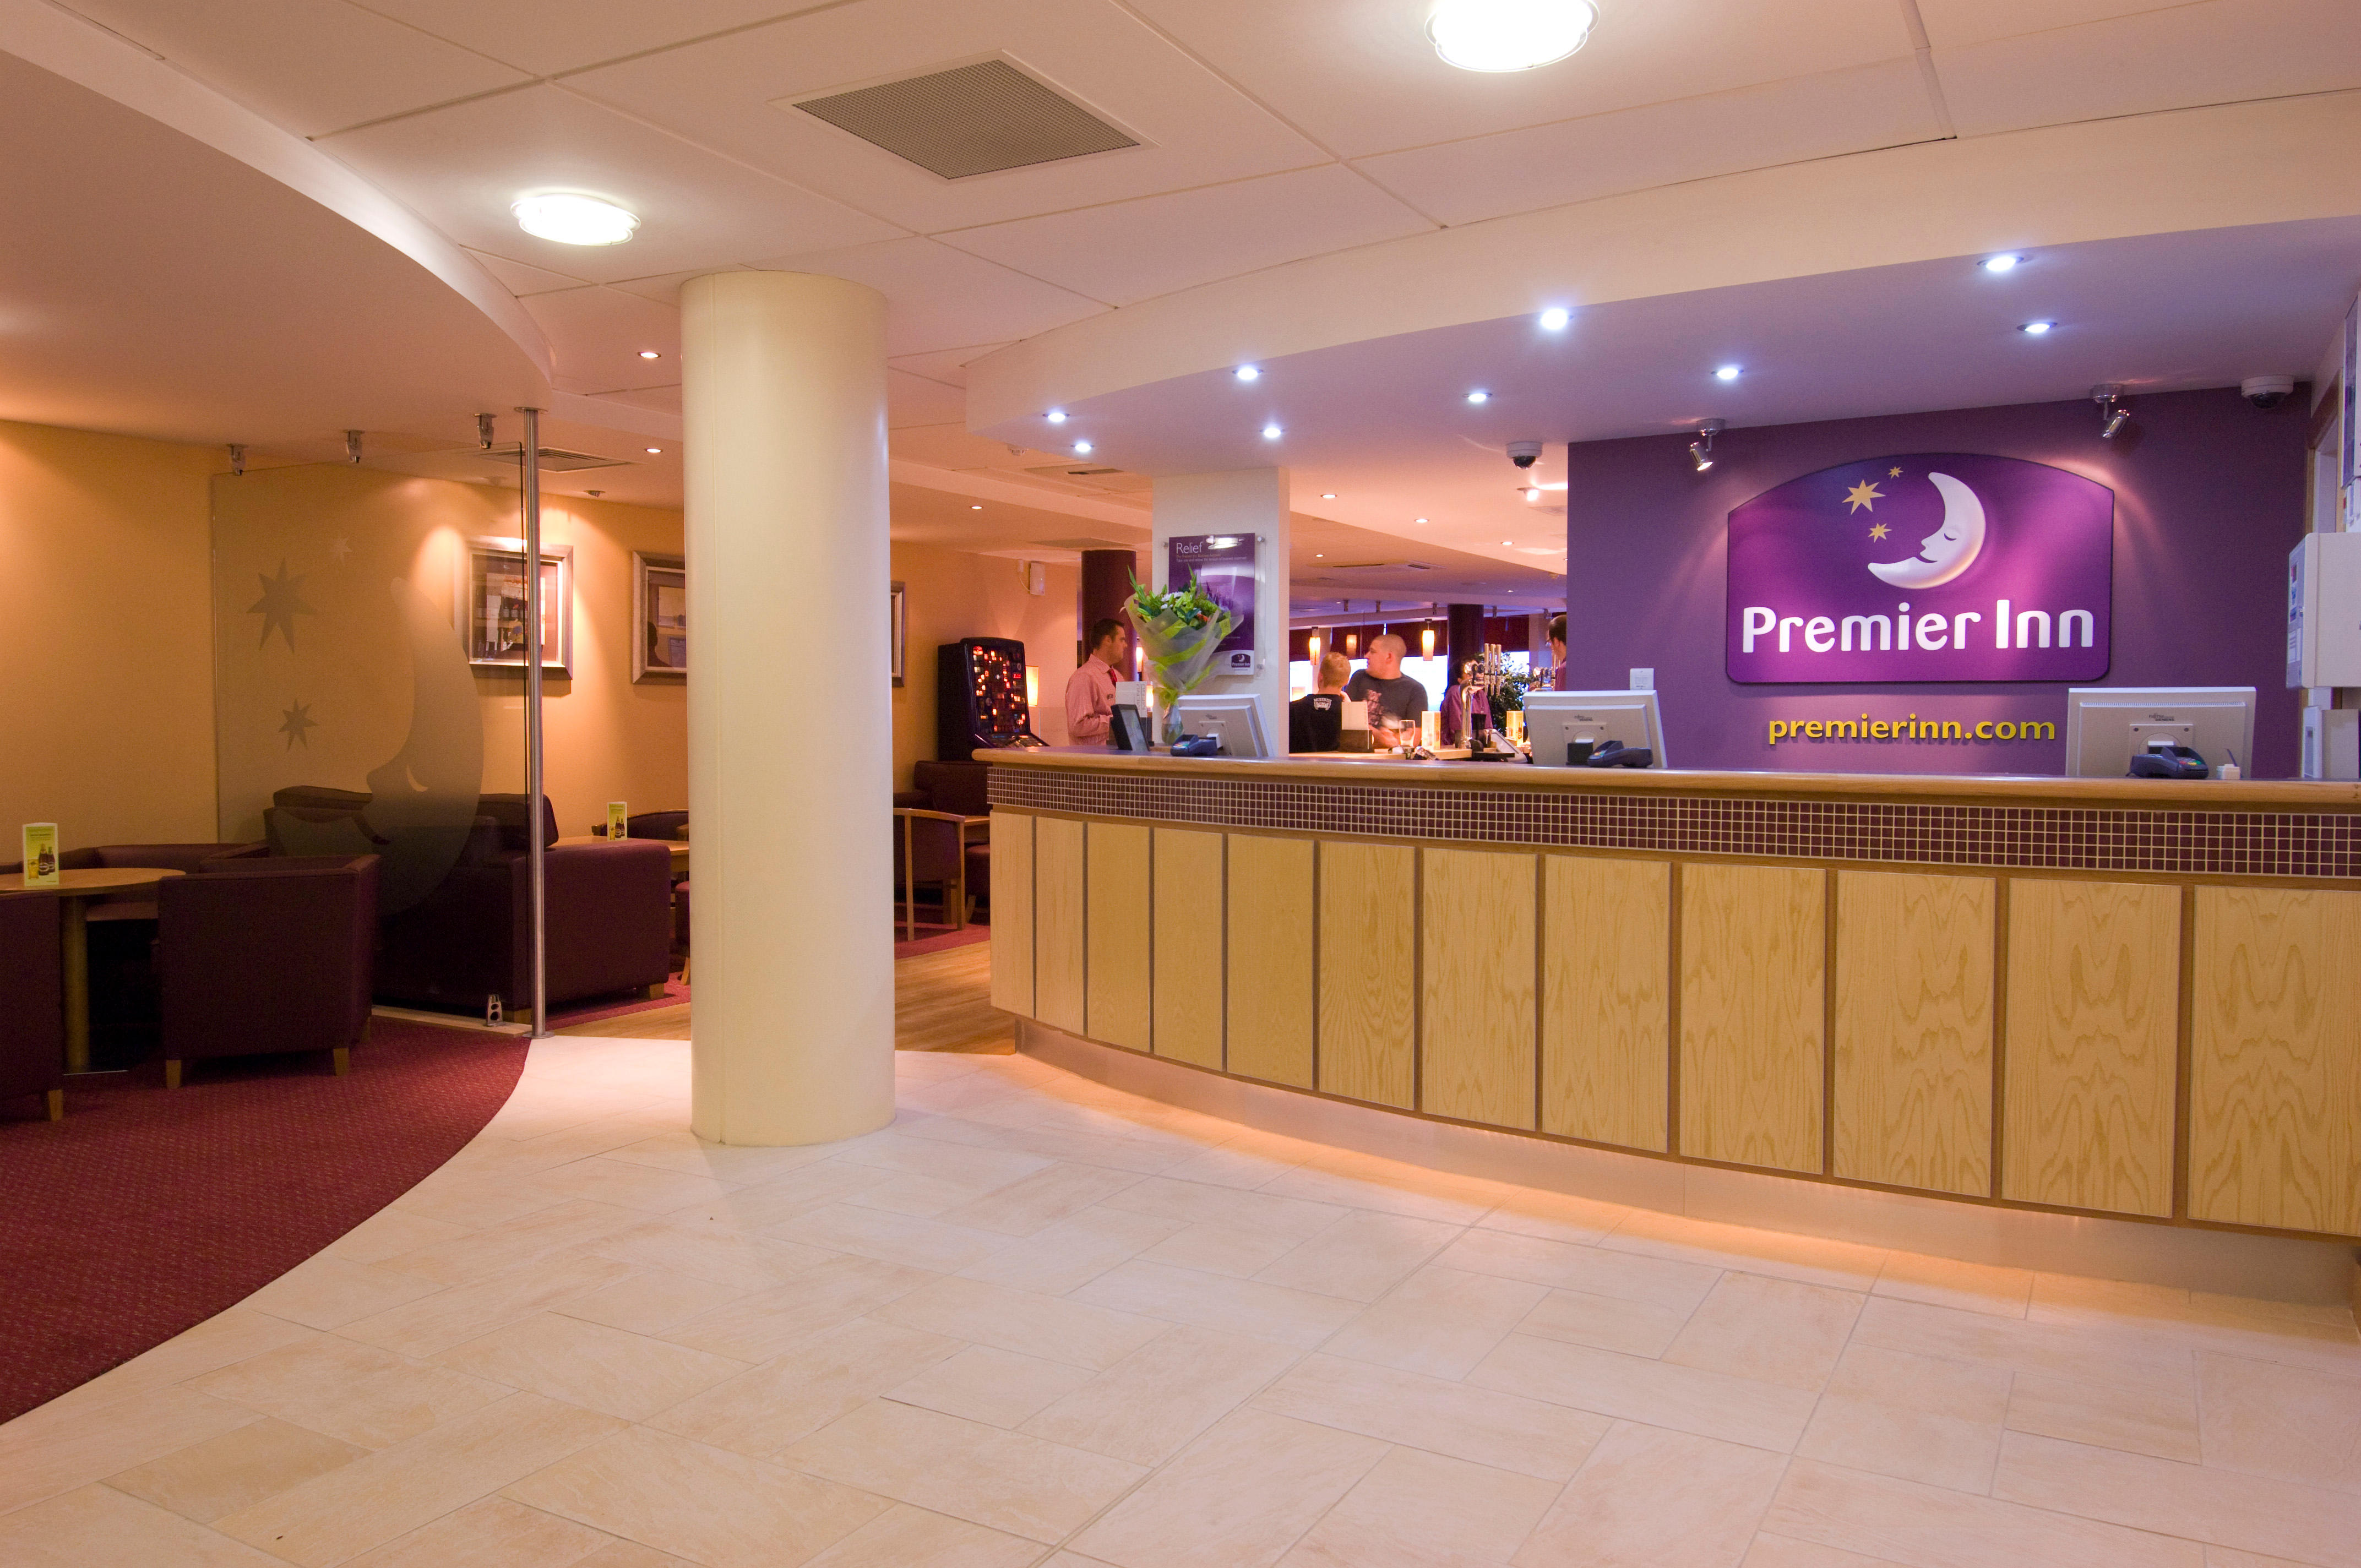 Premier Inn reception Premier Inn Hull City Centre hotel Hull 03330 031731